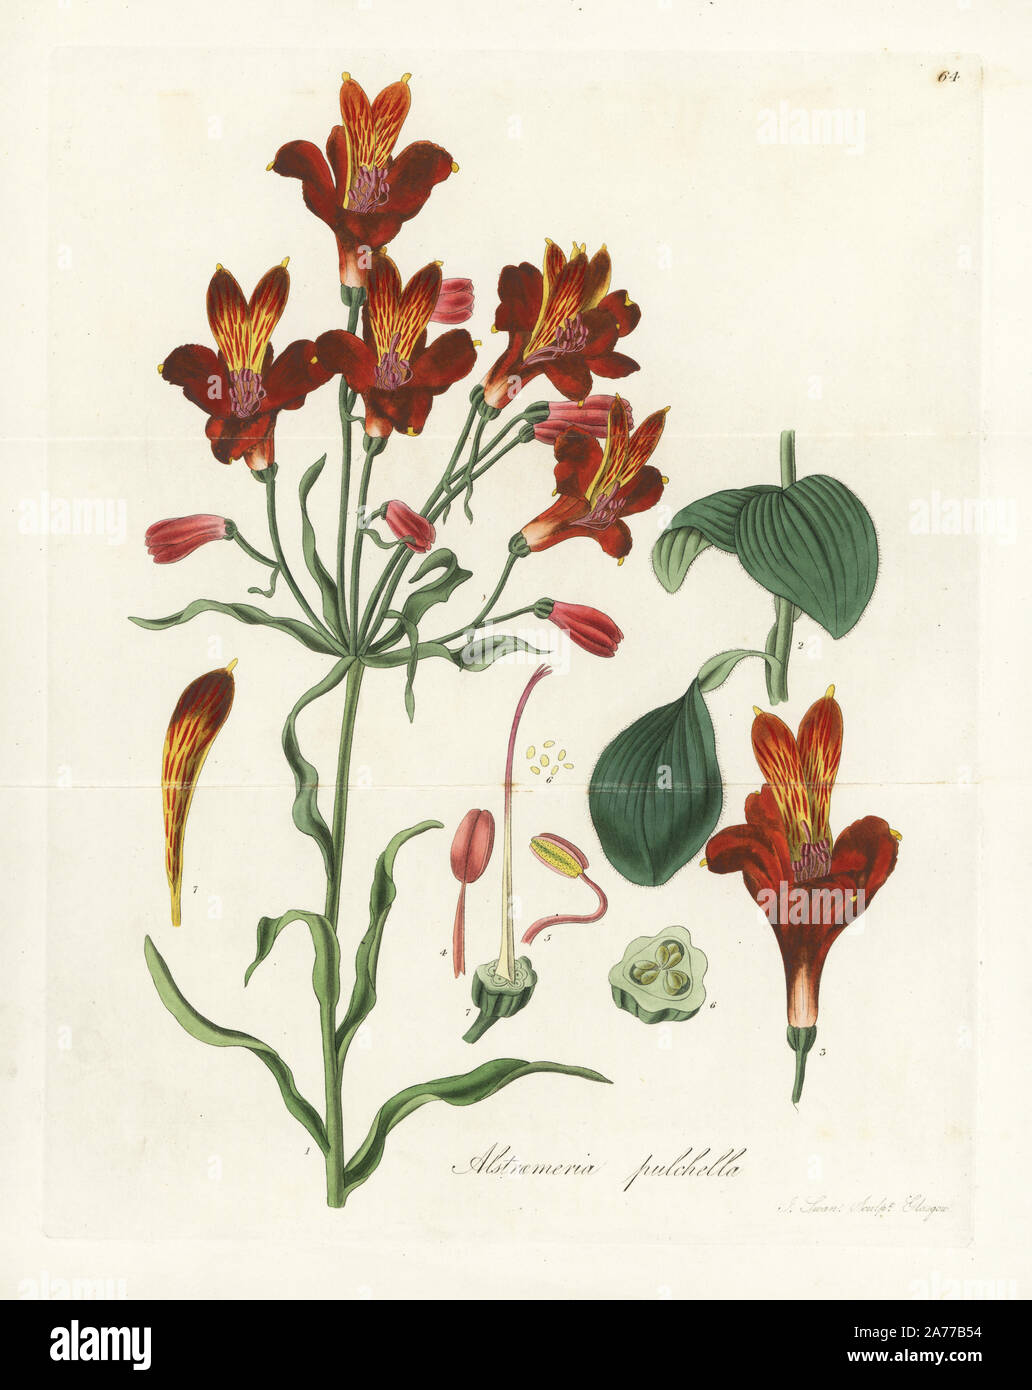 Parrot Lilie oder rot gesprenkelten Blüten Inkalilie, Alstroemeria pulchella. Papierkörbe Kupferstich von J.Schwan nach einem botanischen Abbildung von William Jackson Hooker aus seinem eigenen "exotische Flora", Blackwood, Edinburgh, 1823. Hooker (1785-1865) war ein englischer Botaniker spezialisiert auf Orchideen und Farne, und war Direktor der Königlichen Botanischen Gärten in Kew von 1841. Stockfoto